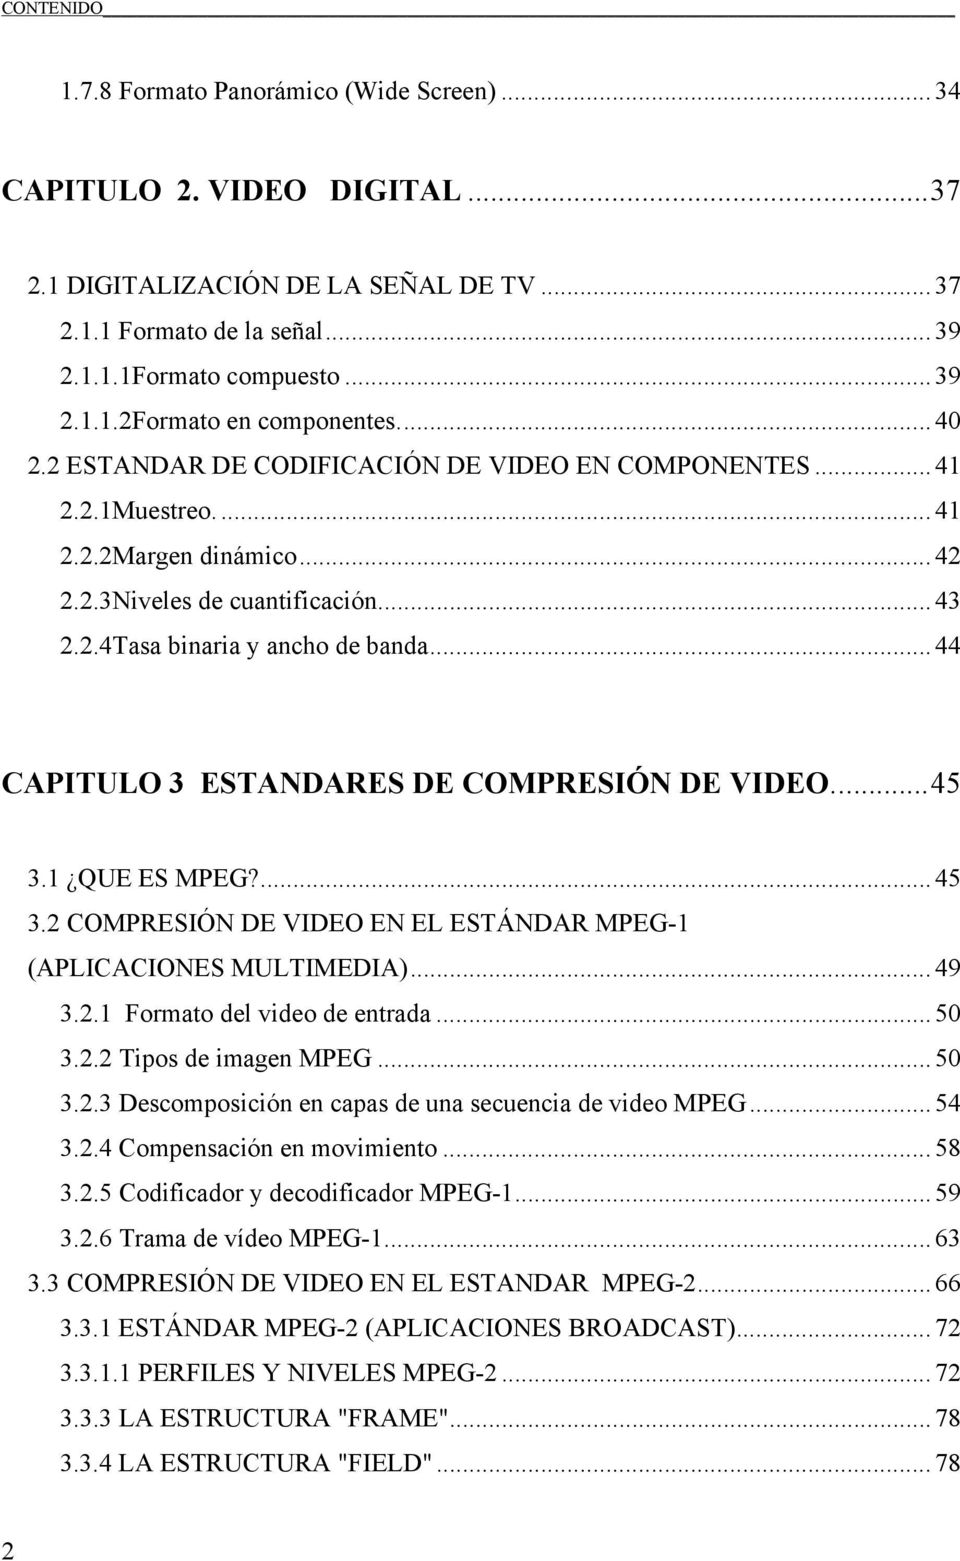 ..44 CAPITULO 3 ESTANDARES DE COMPRESIÓN DE VIDEO...45 3.1 QUE ES MPEG?...45 3.2 COMPRESIÓN DE VIDEO EN EL ESTÁNDAR MPEG-1 (APLICACIONES MULTIMEDIA)... 49 3.2.1 Formato del video de entrada...50 3.2.2 Tipos de imagen MPEG.